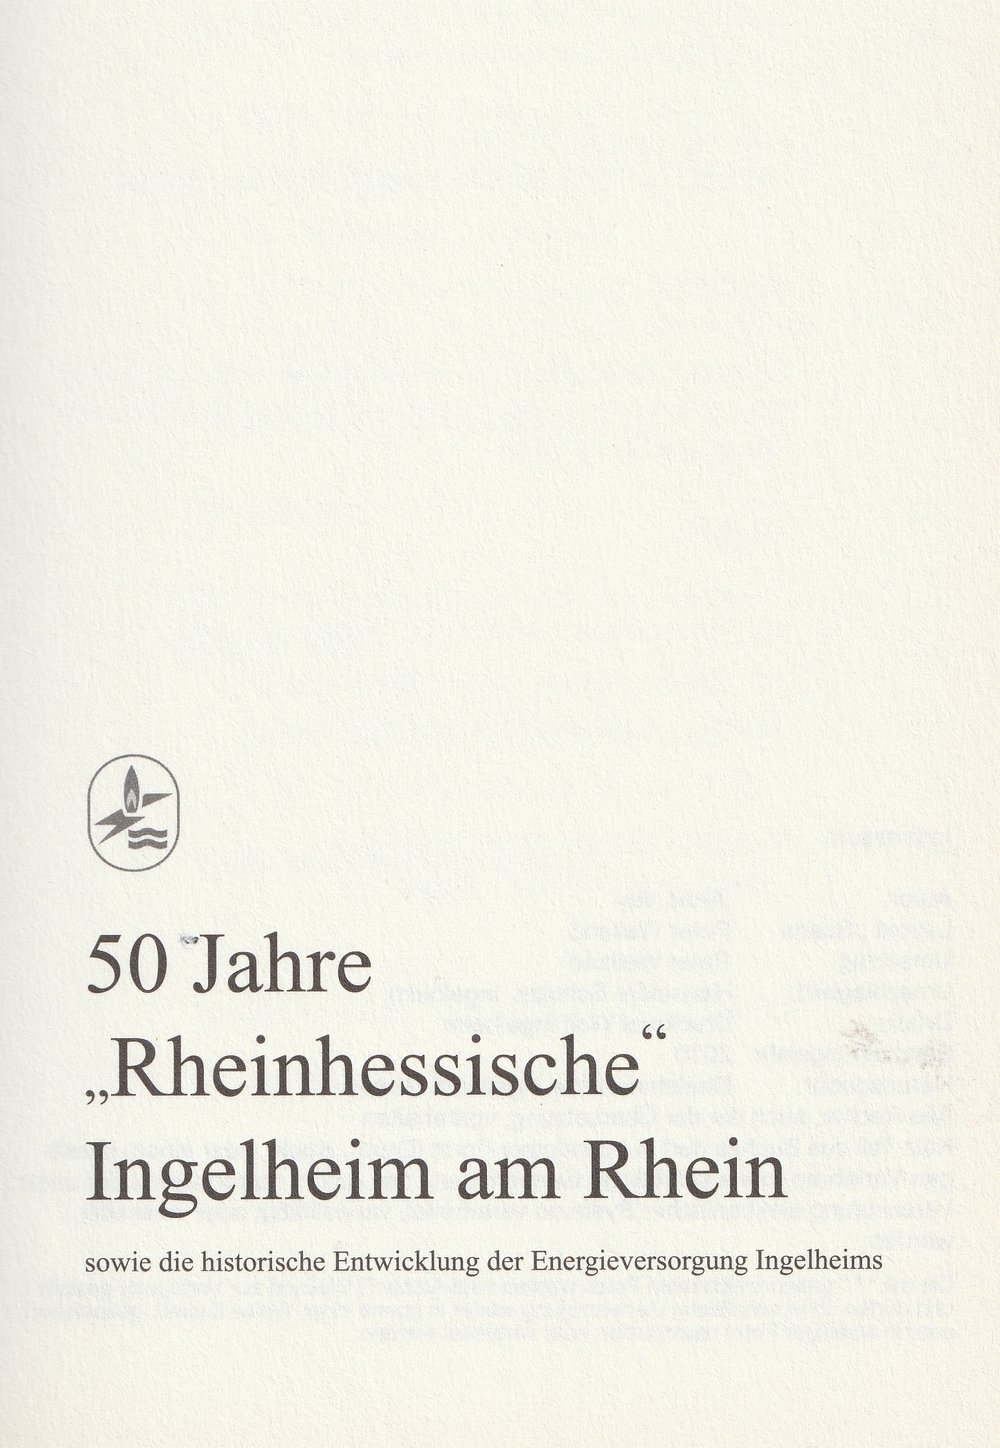 50 Jahre "Rheinhessische" - Ingelheim am Rhein (Kulturverein Guntersblum CC BY-NC-SA)